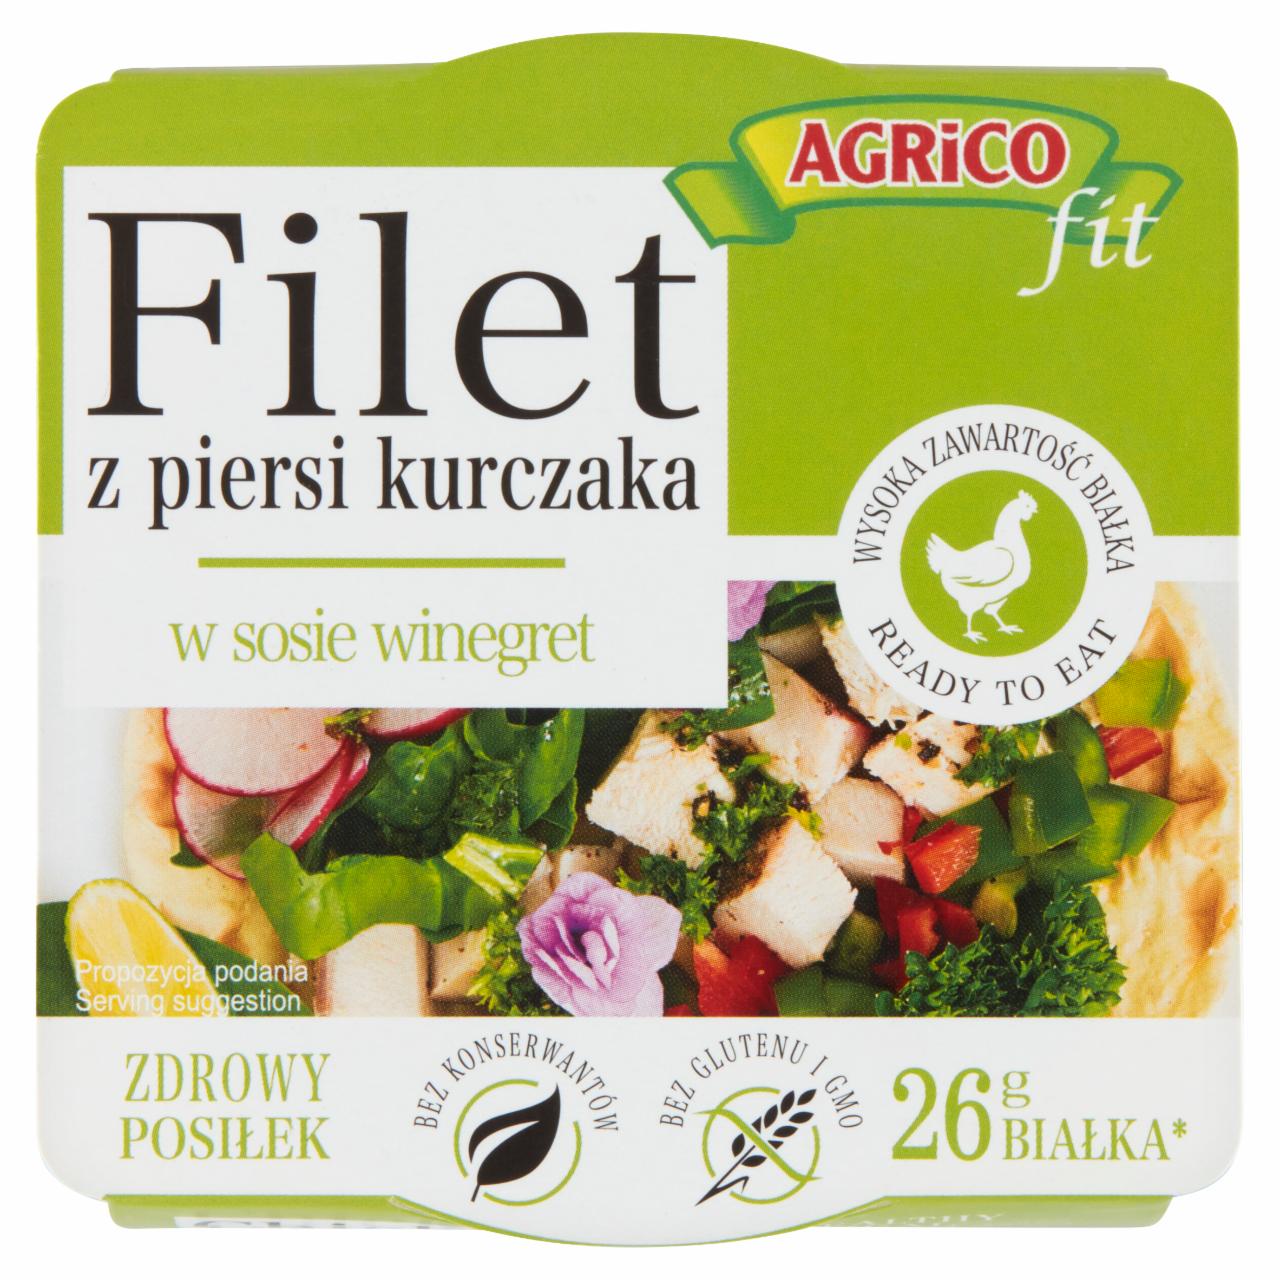 Zdjęcia - Agrico Fit Filet z piersi z kurczaka w sosie winegret 160 g